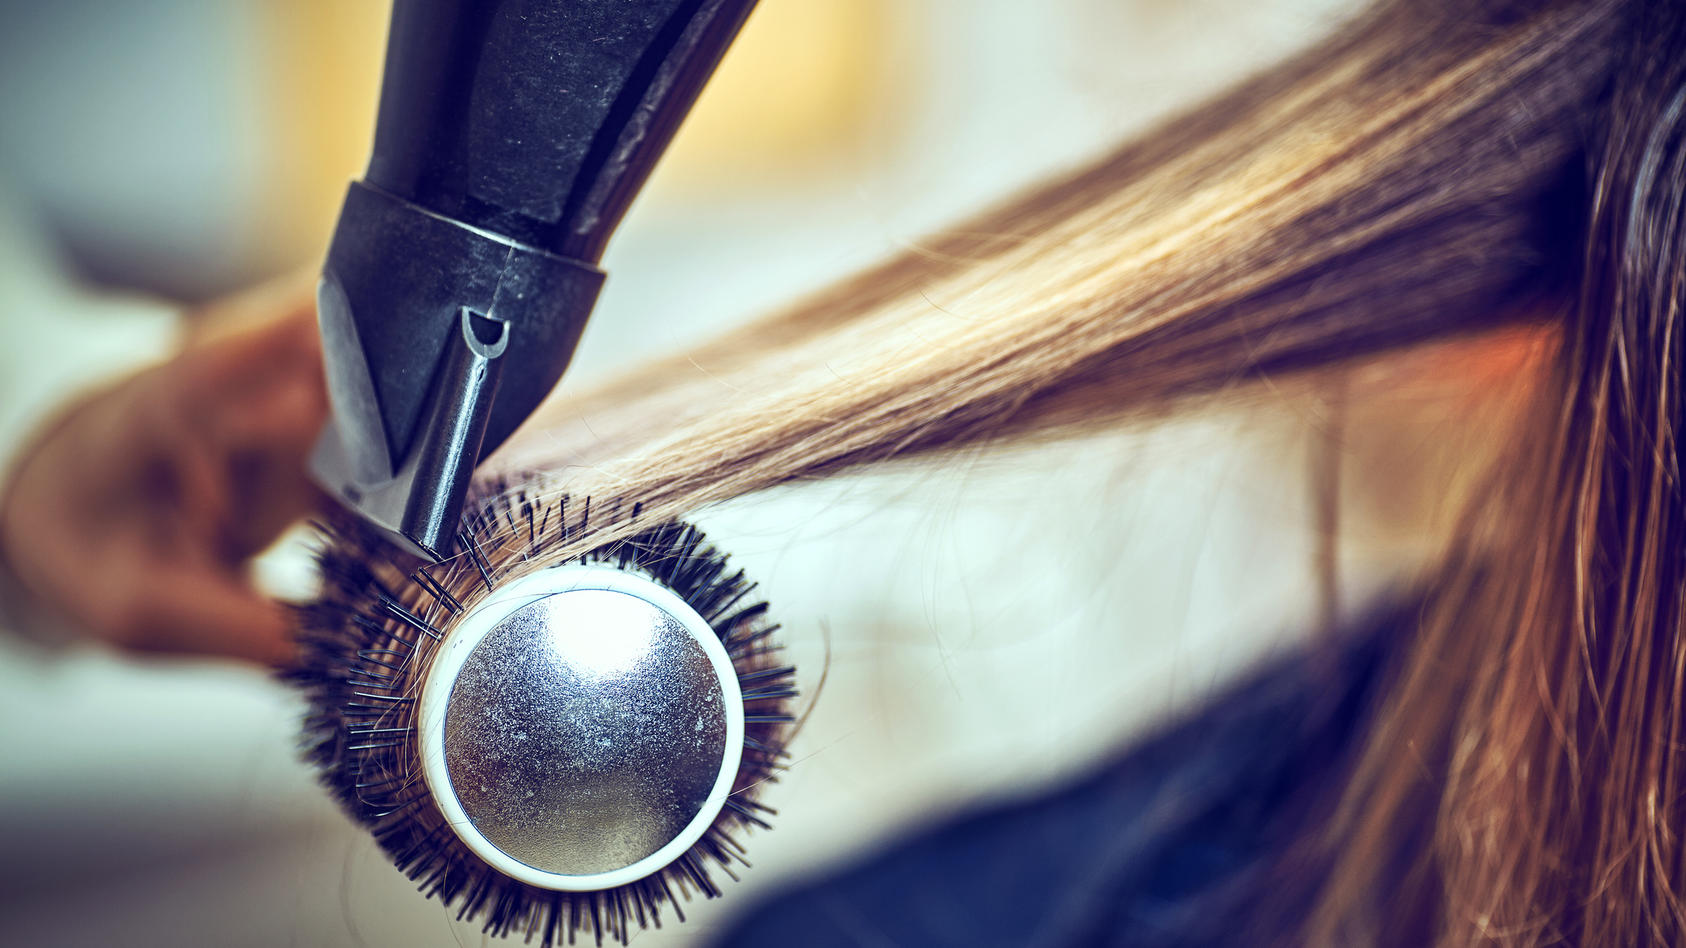 Arrangement Luipaard Veraangenamen Haare richtig föhnen: Die besten Tipps für ein Styling wie vom Profi